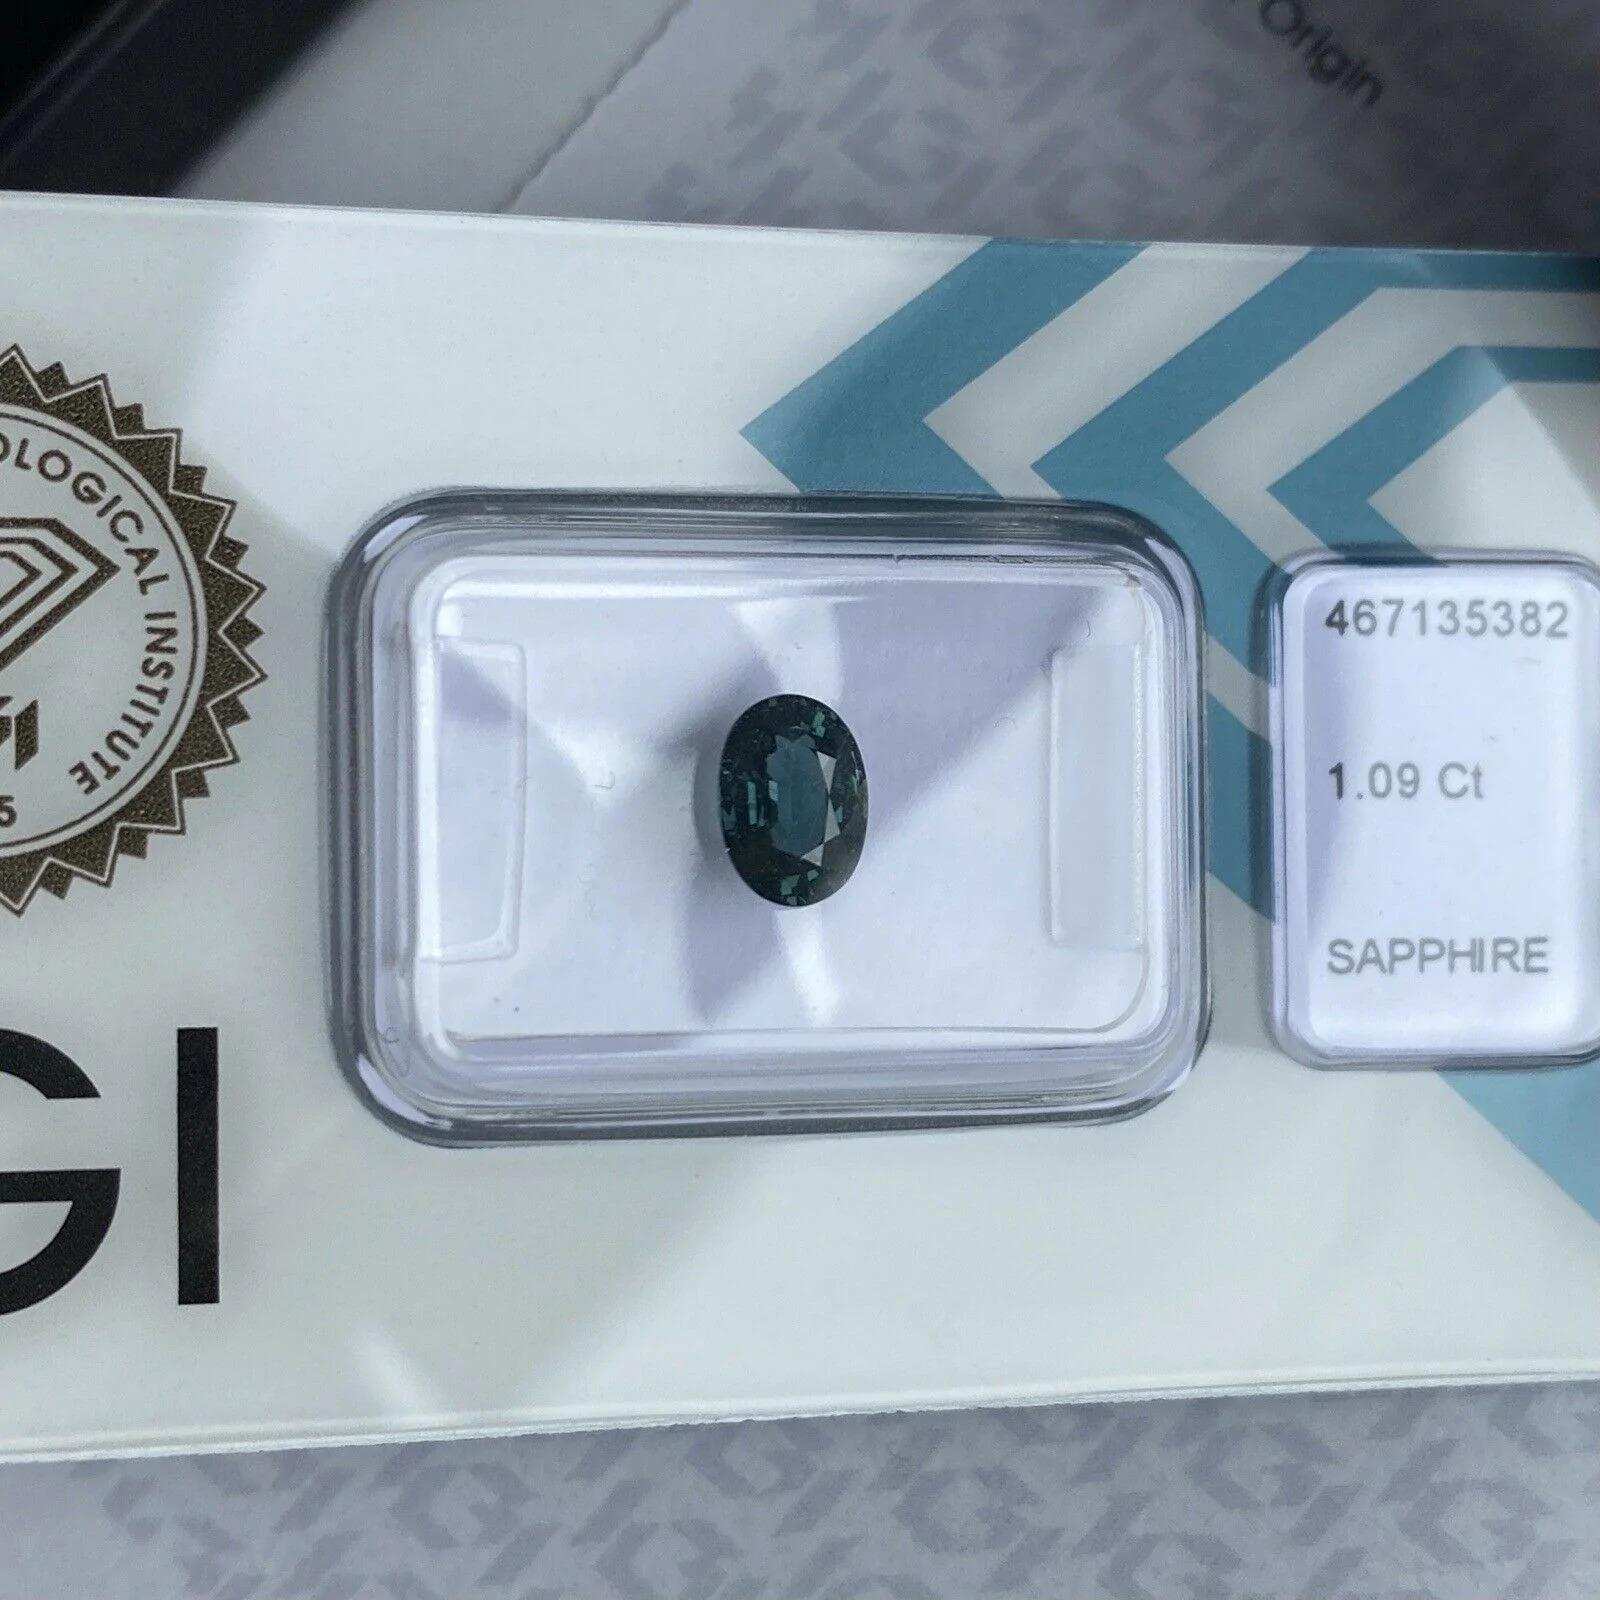 Australischer australischer 1,09 Karat unbehandelter tiefgrüner blauer Teal Saphir im Ovalschliff, IGI-zertifiziert 4